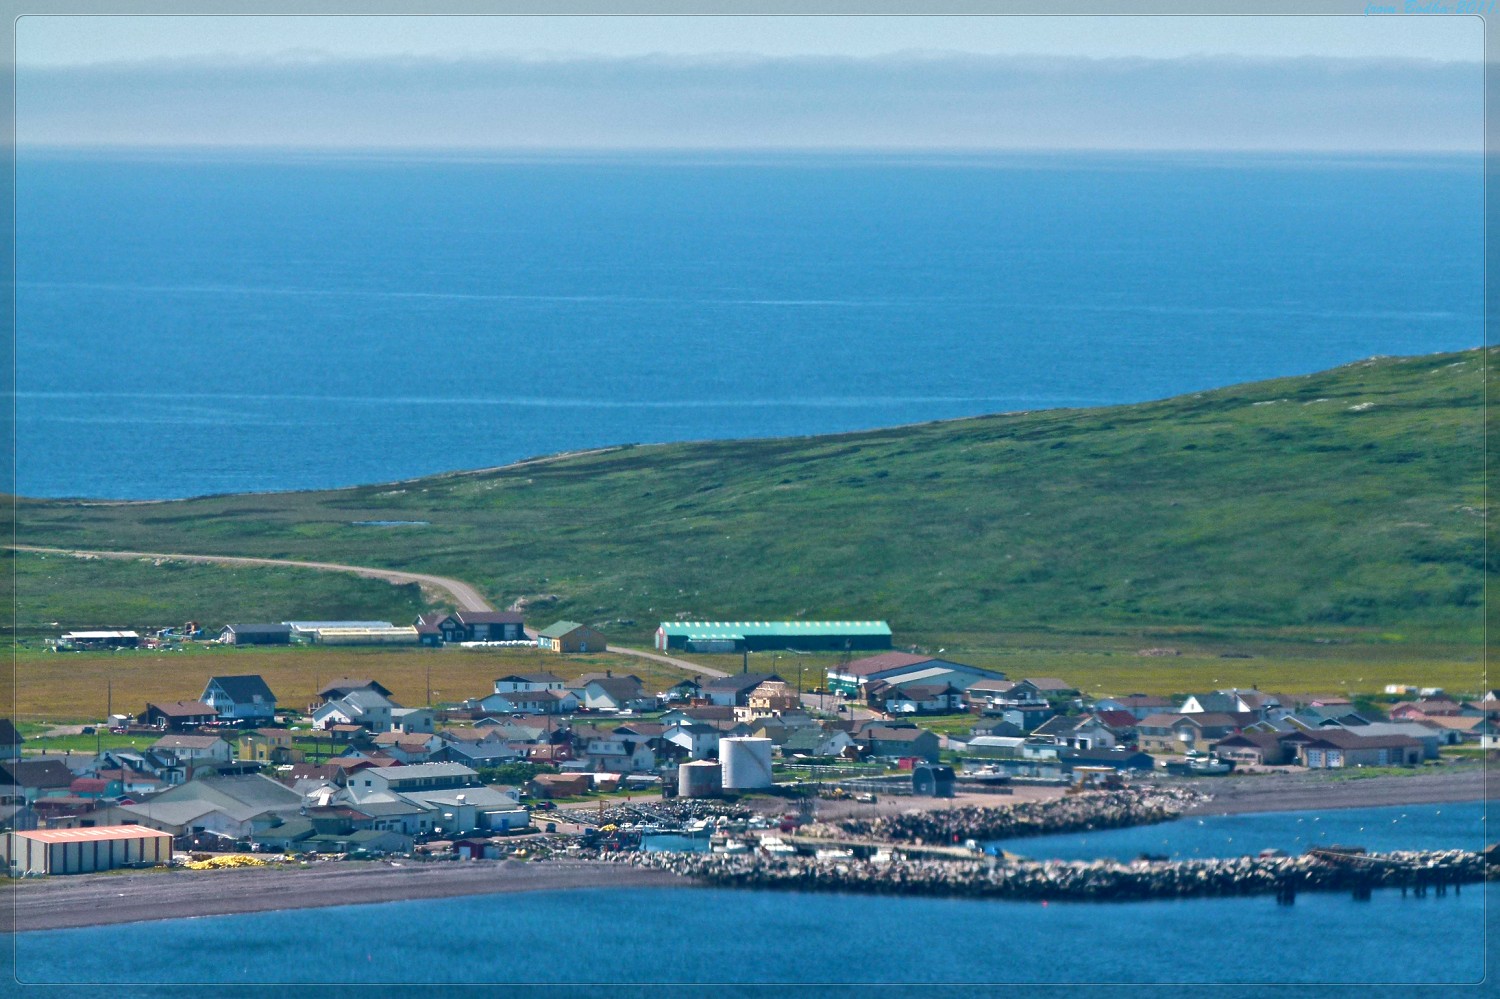 Île Saint Pierre Saint Pierre et Miquelon — Wikipédia